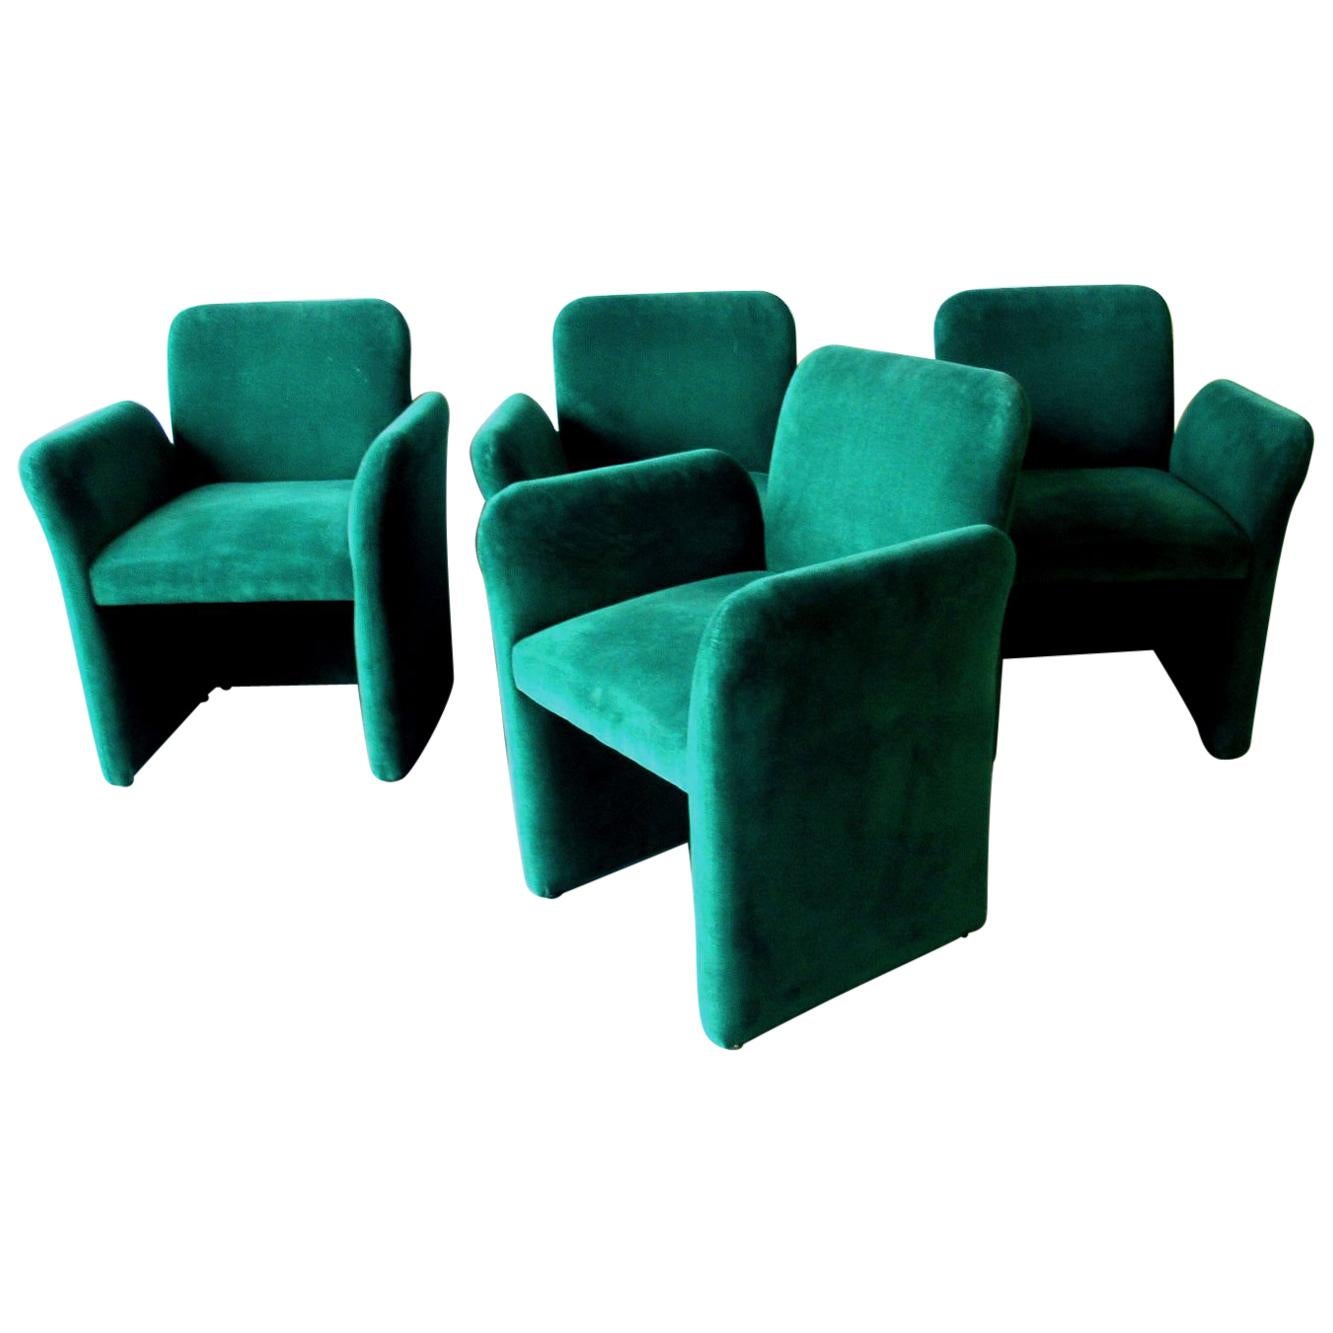 Emerald Green Velvet Upholstered Armchairs by Leon Rosen for Pace 1980s